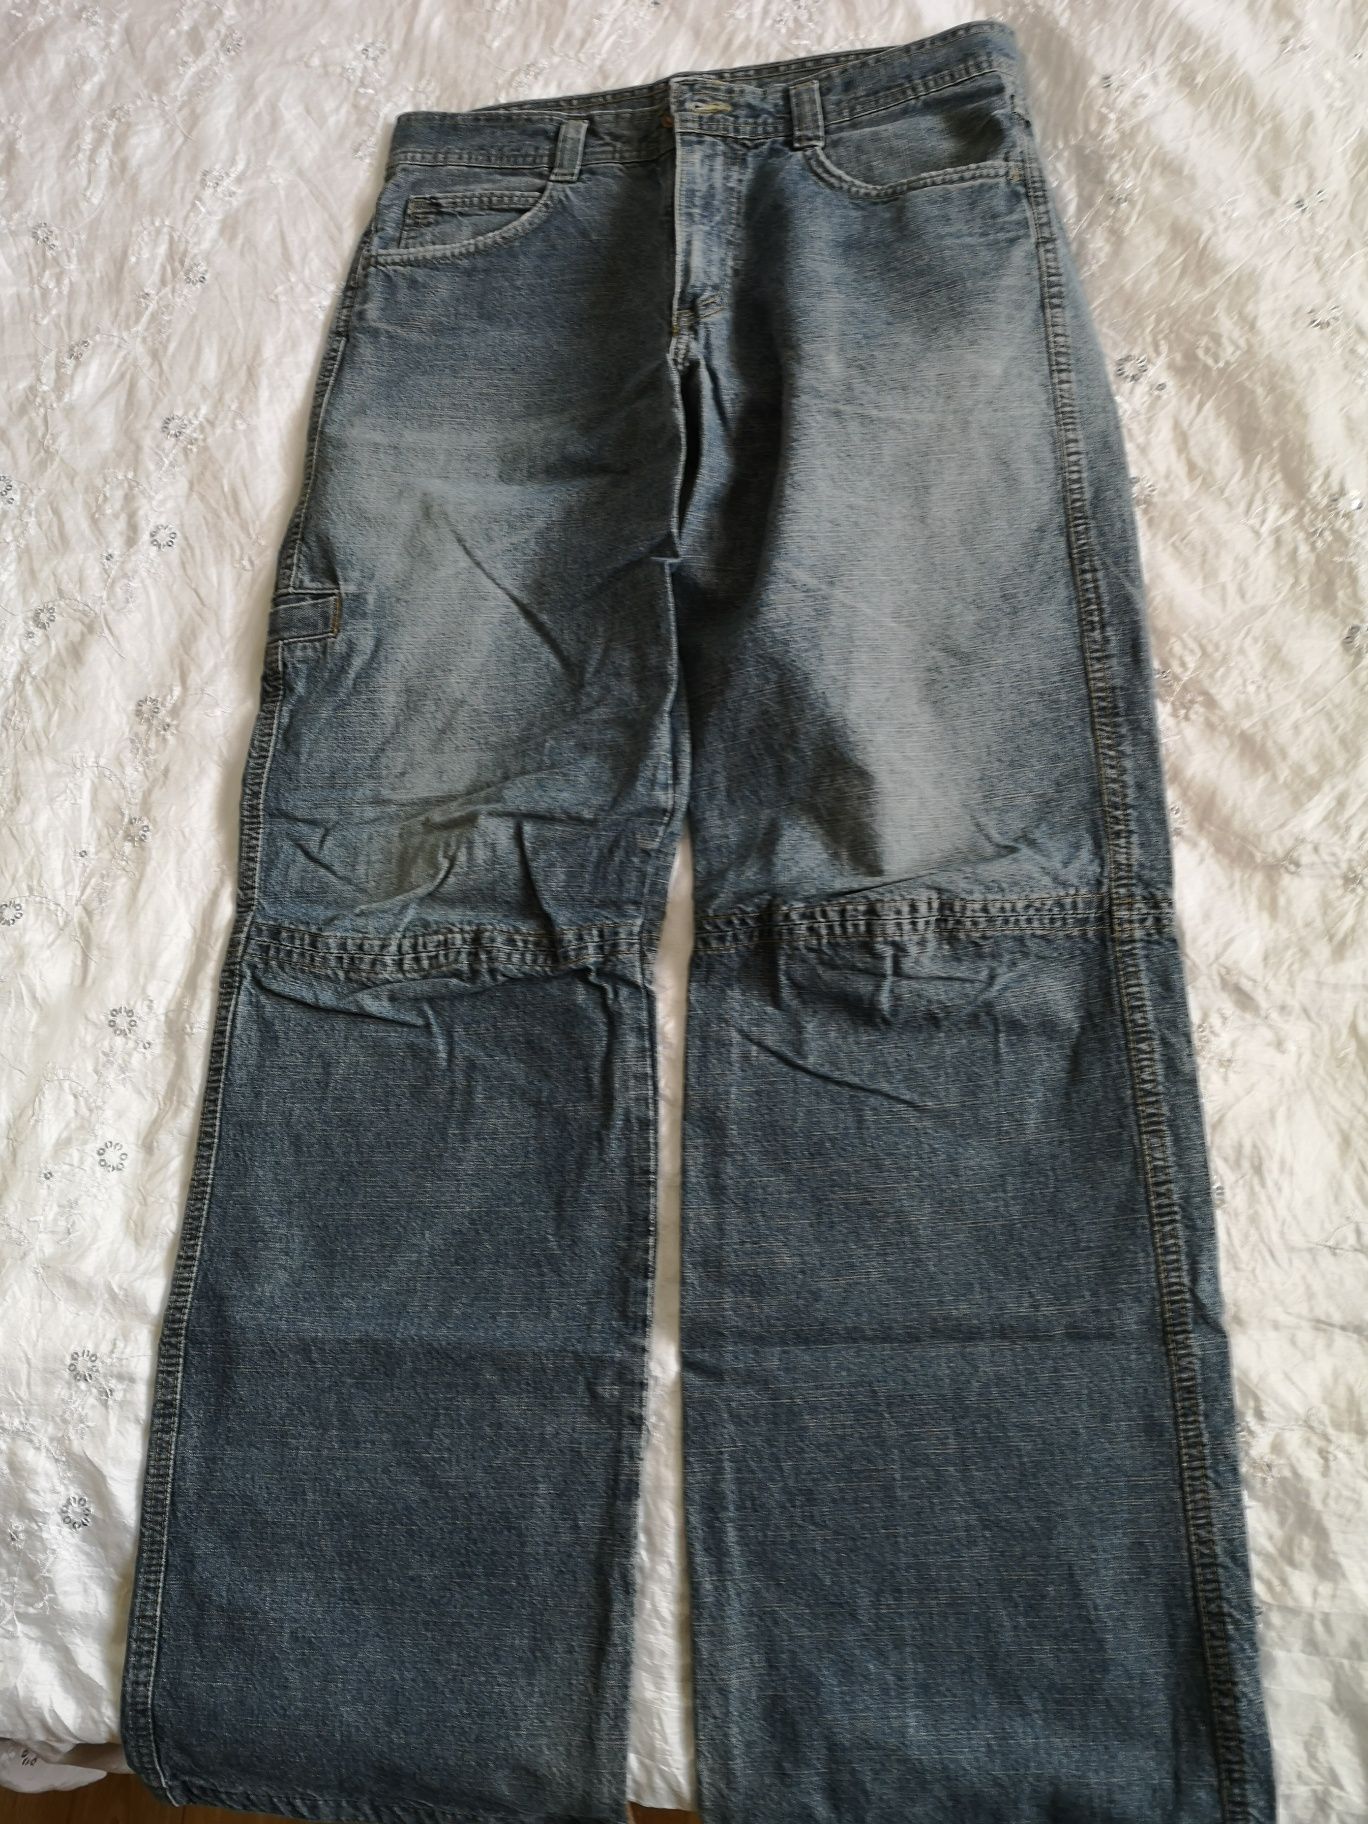 Spodnie jeans męskie Patrol Prato 31/32, sprzedam